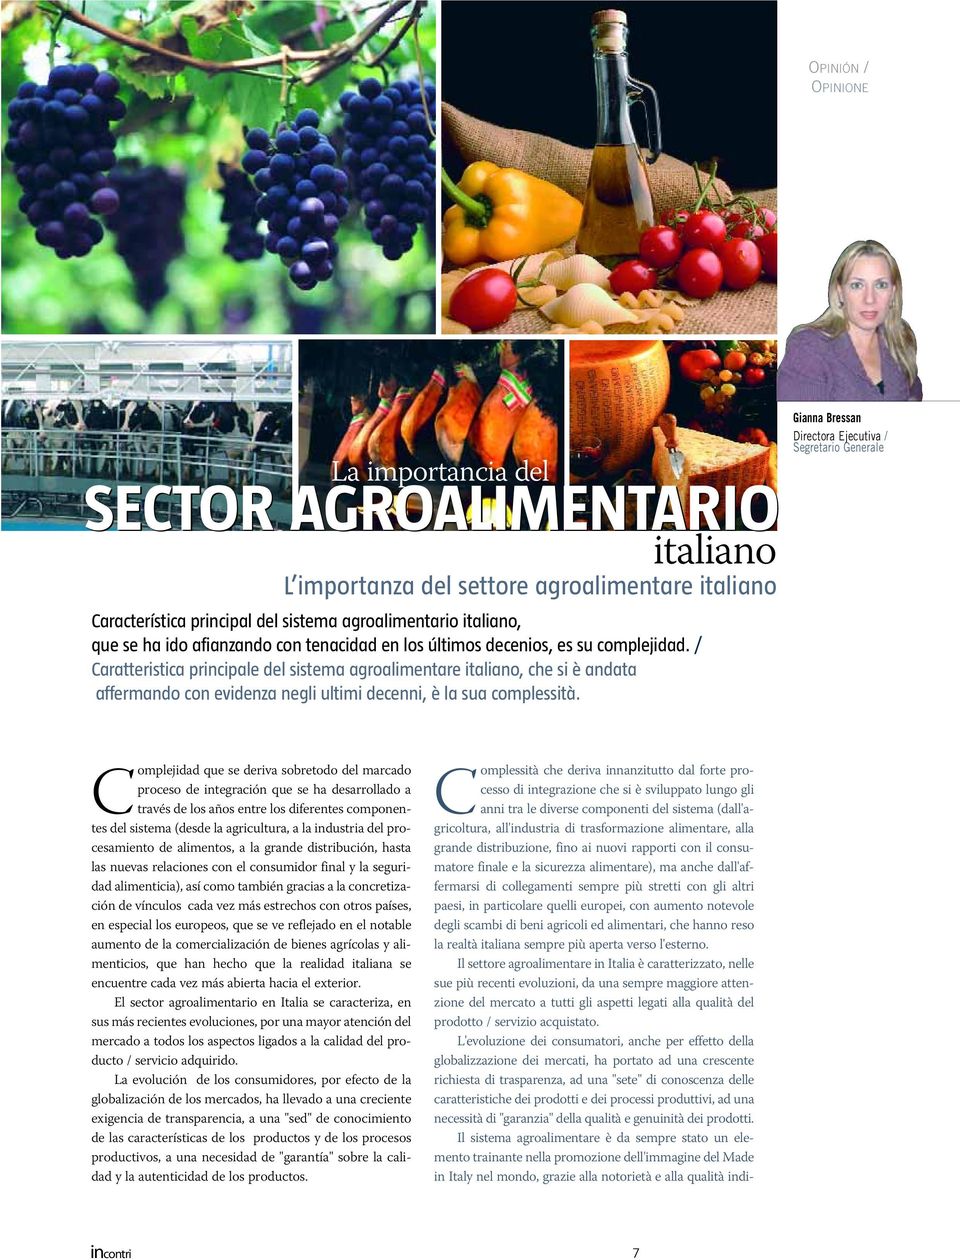 italiano L importanza del settore agroalimentare italiano Gianna Bressan Directora Ejecutiva / Segretario Generale Complejidad que se deriva sobretodo del marcado proceso de integración que se ha